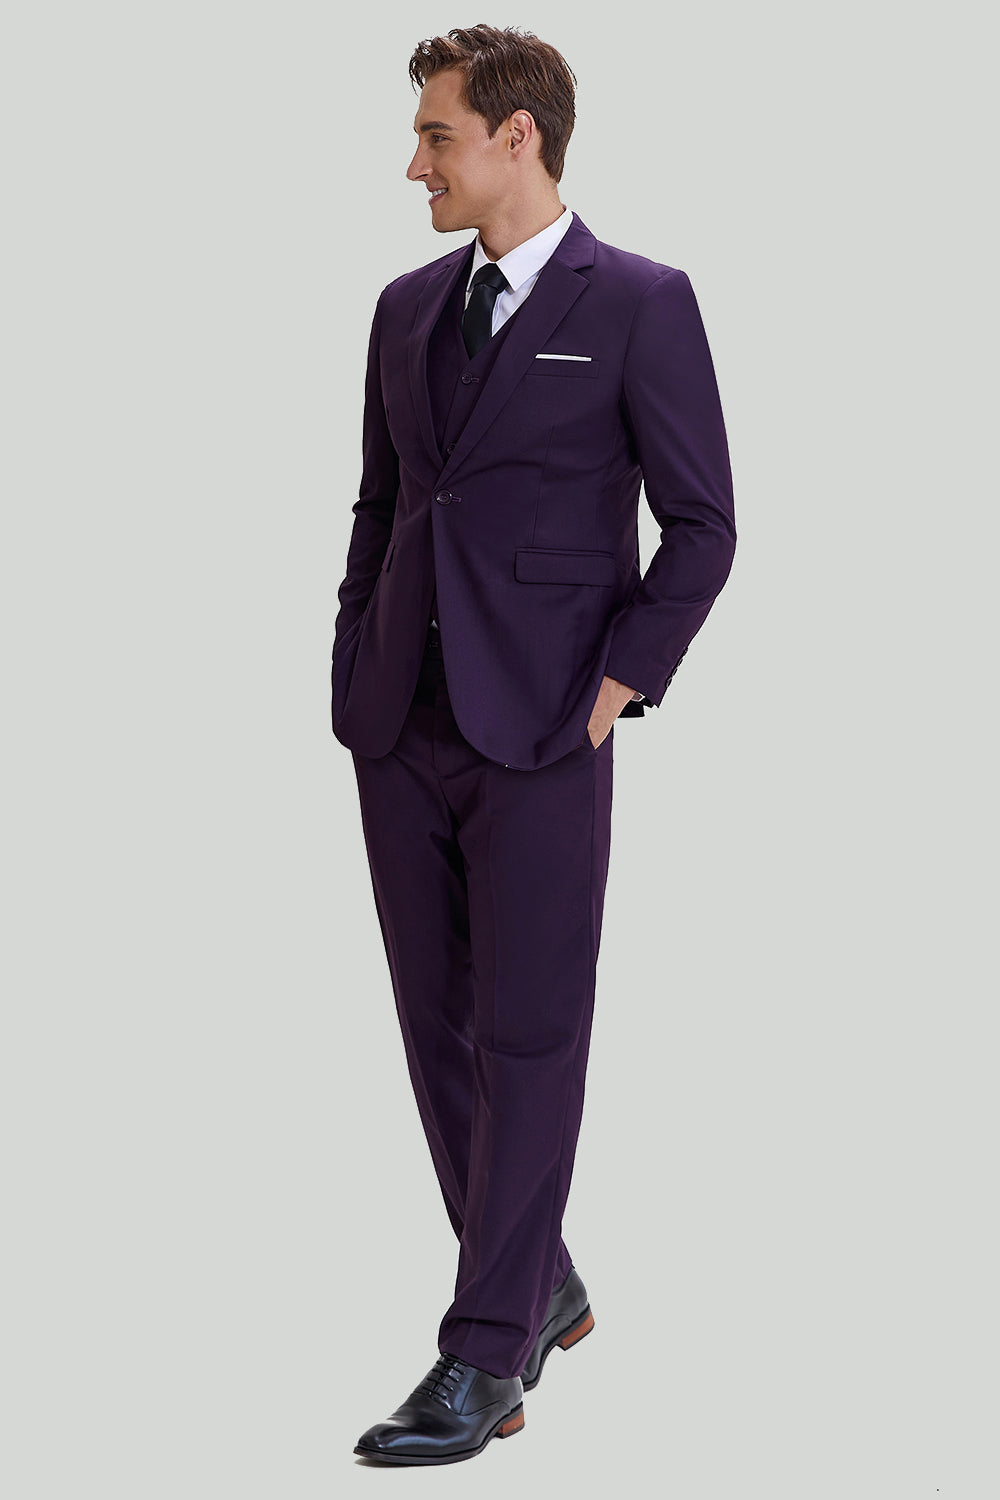 Black Plaid 3 Piece Purple Men Wedding Suit